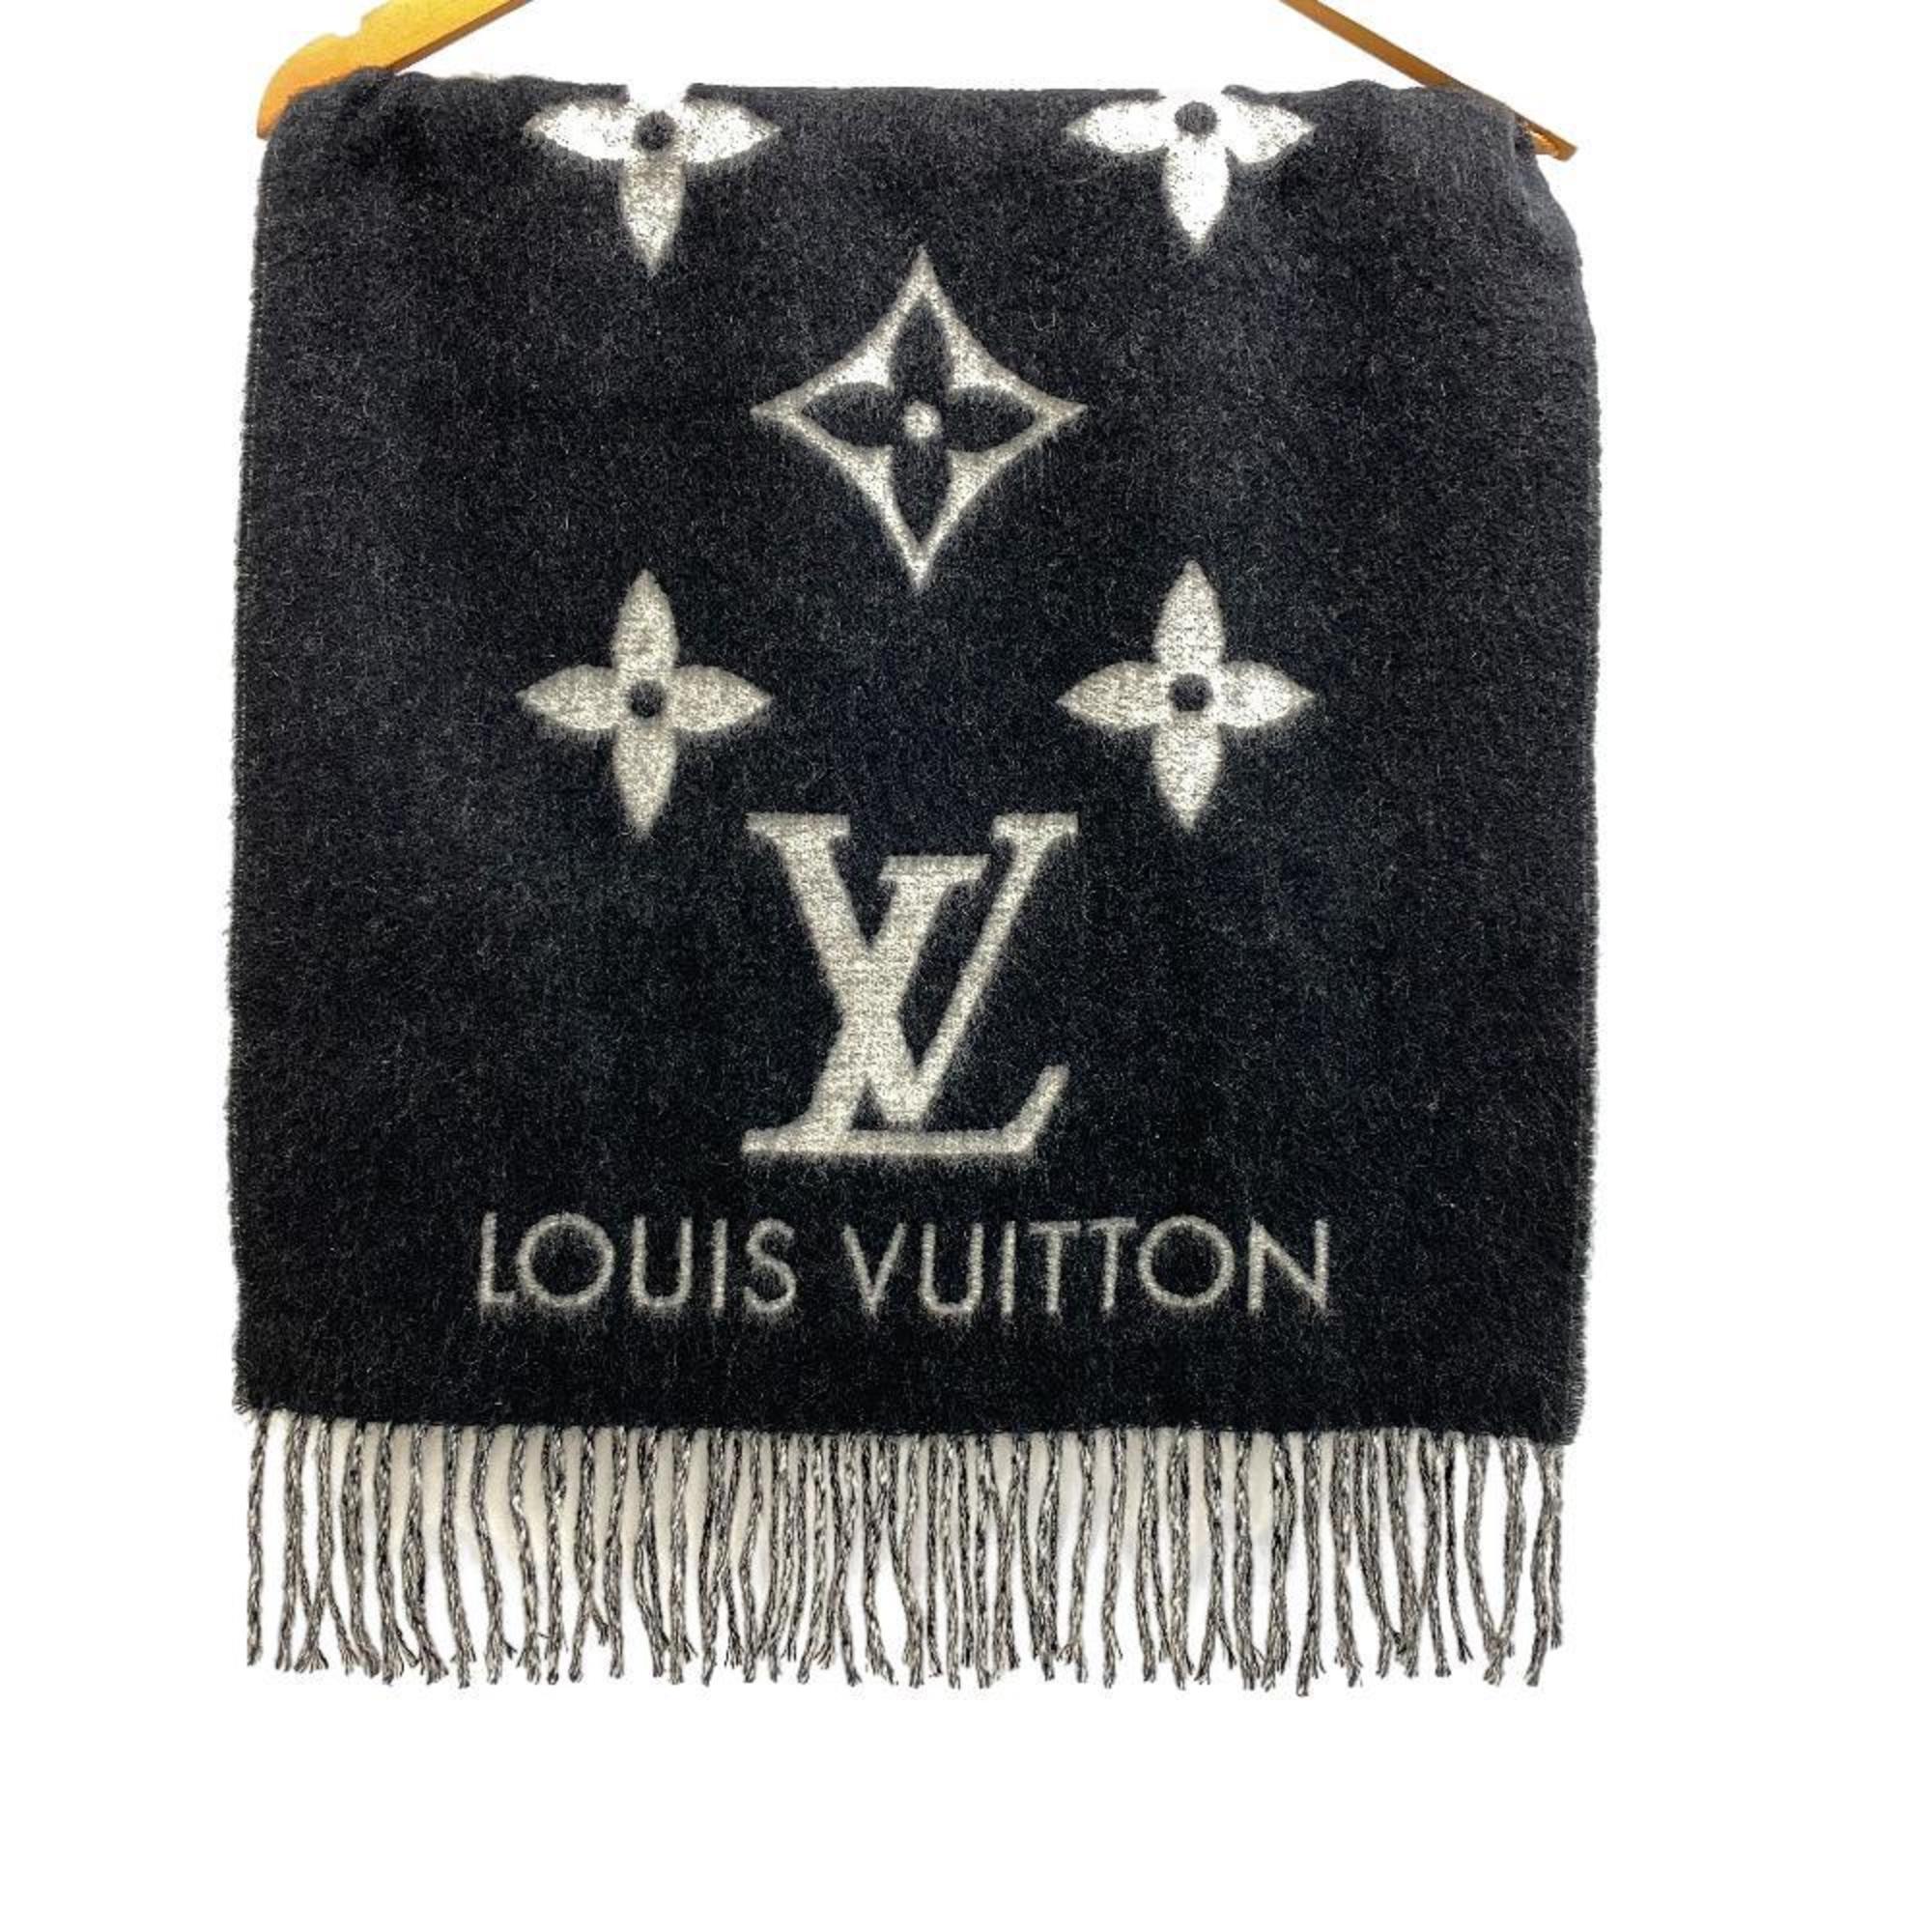 LOUIS VUITTON Louis Vuitton M71040 Echarpe Cavic Scarf Black Unisex Z0006254